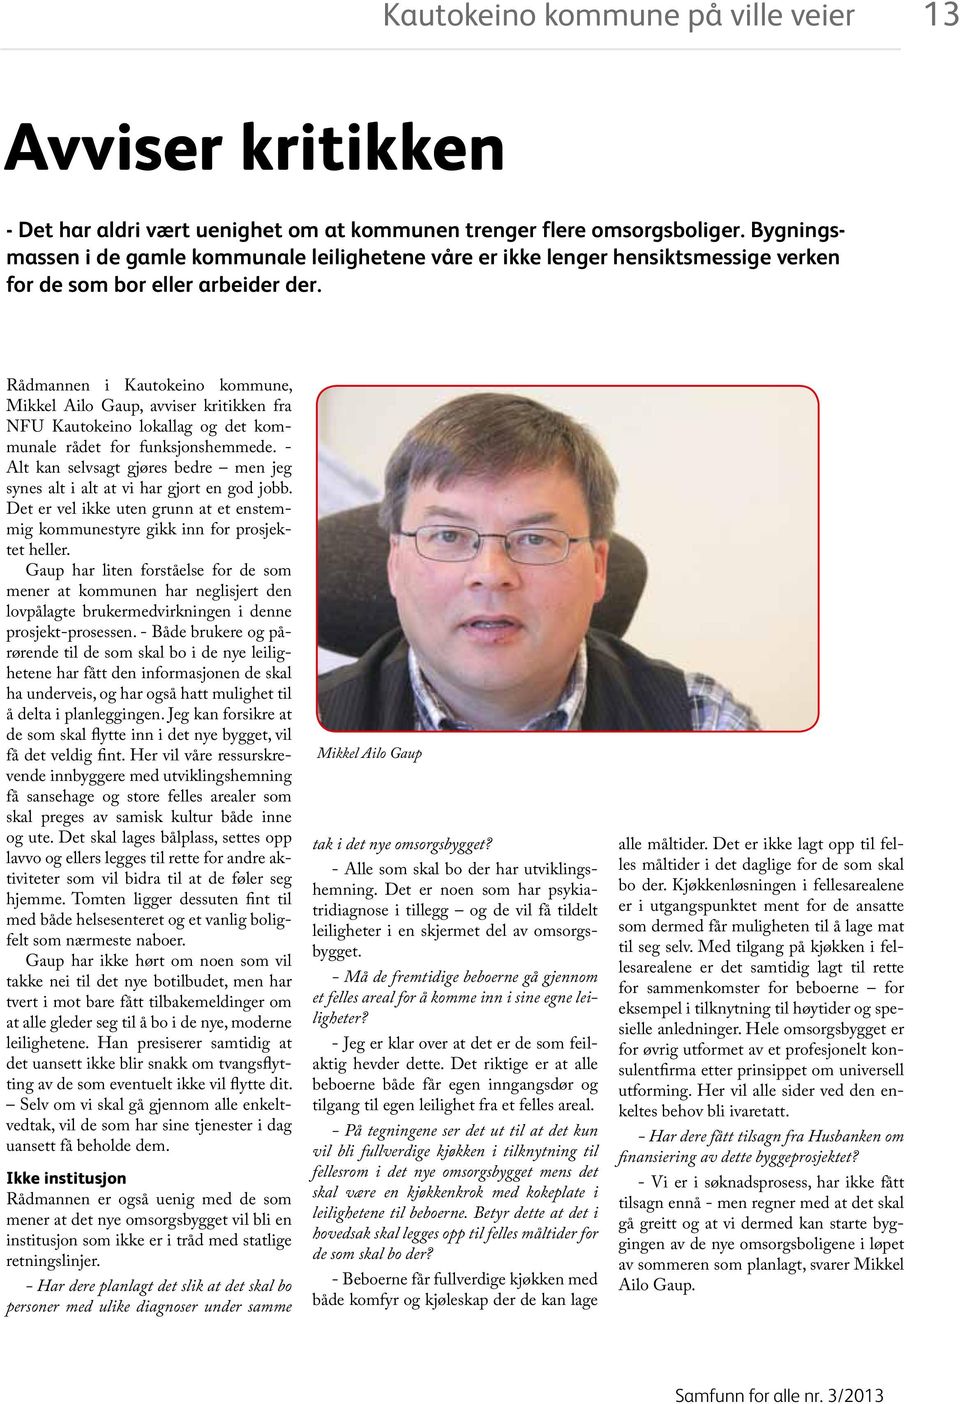 Rådmannen i Kautokeino kommune, Mikkel Ailo Gaup, avviser kritikken fra NFU Kautokeino lokallag og det kommunale rådet for funksjonshemmede.